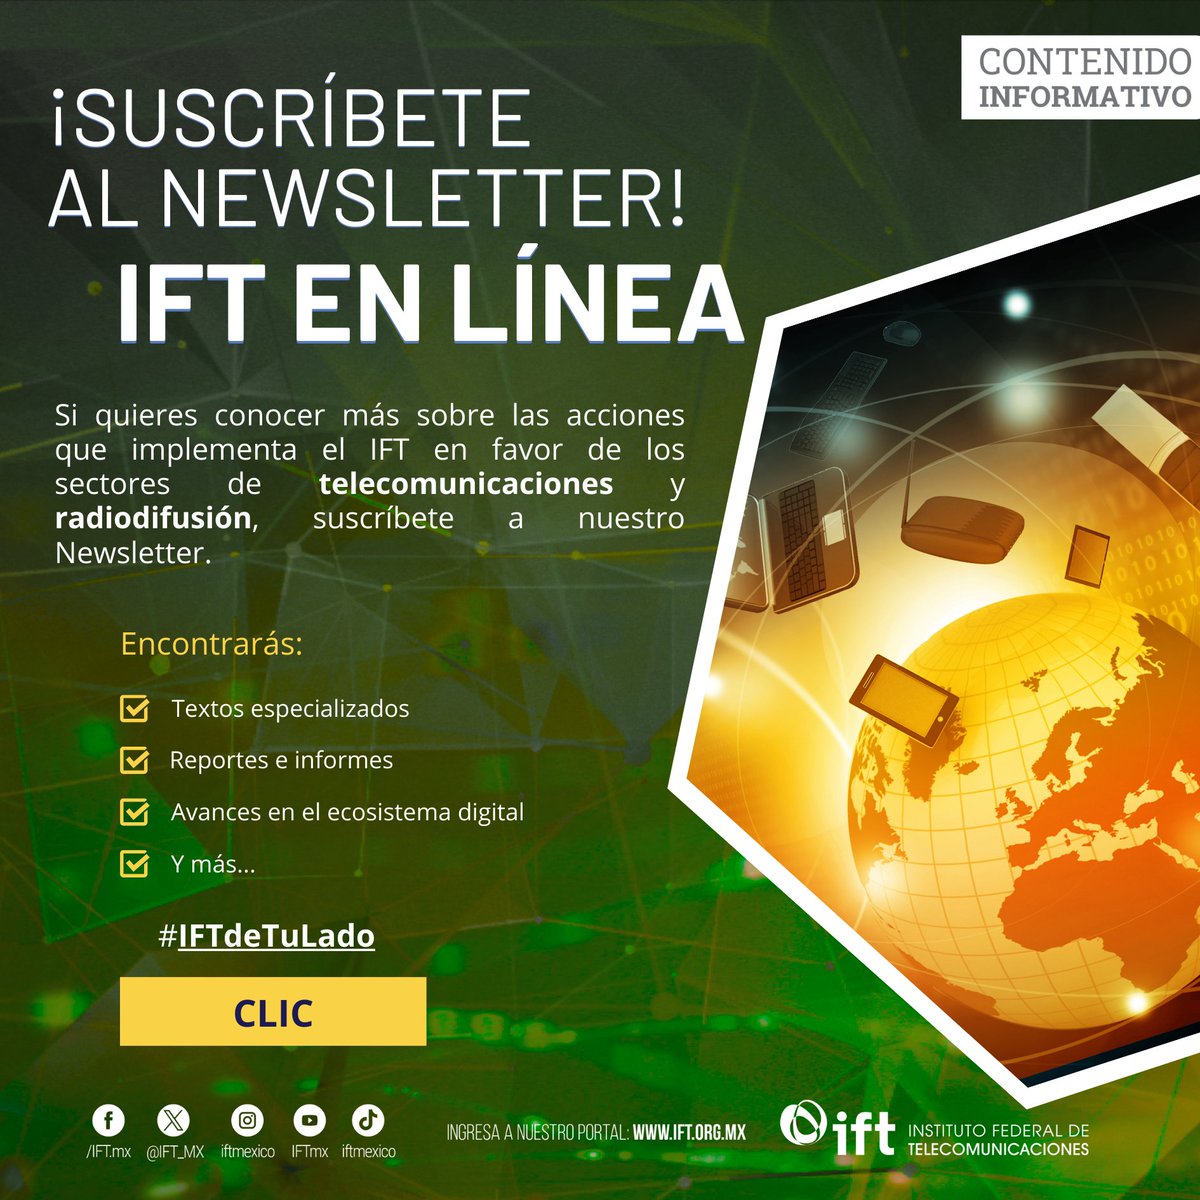 ¿Te apasiona el mundo digital 🌐, las #Telecom🛜 o la #Radiodifusión📡? Entonces no puedes perderte nuestro newsletter #IFTenLínea 📰💻📲 Forma parte de nuestra comunidad digital, ¡suscríbete! 🔔✅👉 bit.ly/449I5N8